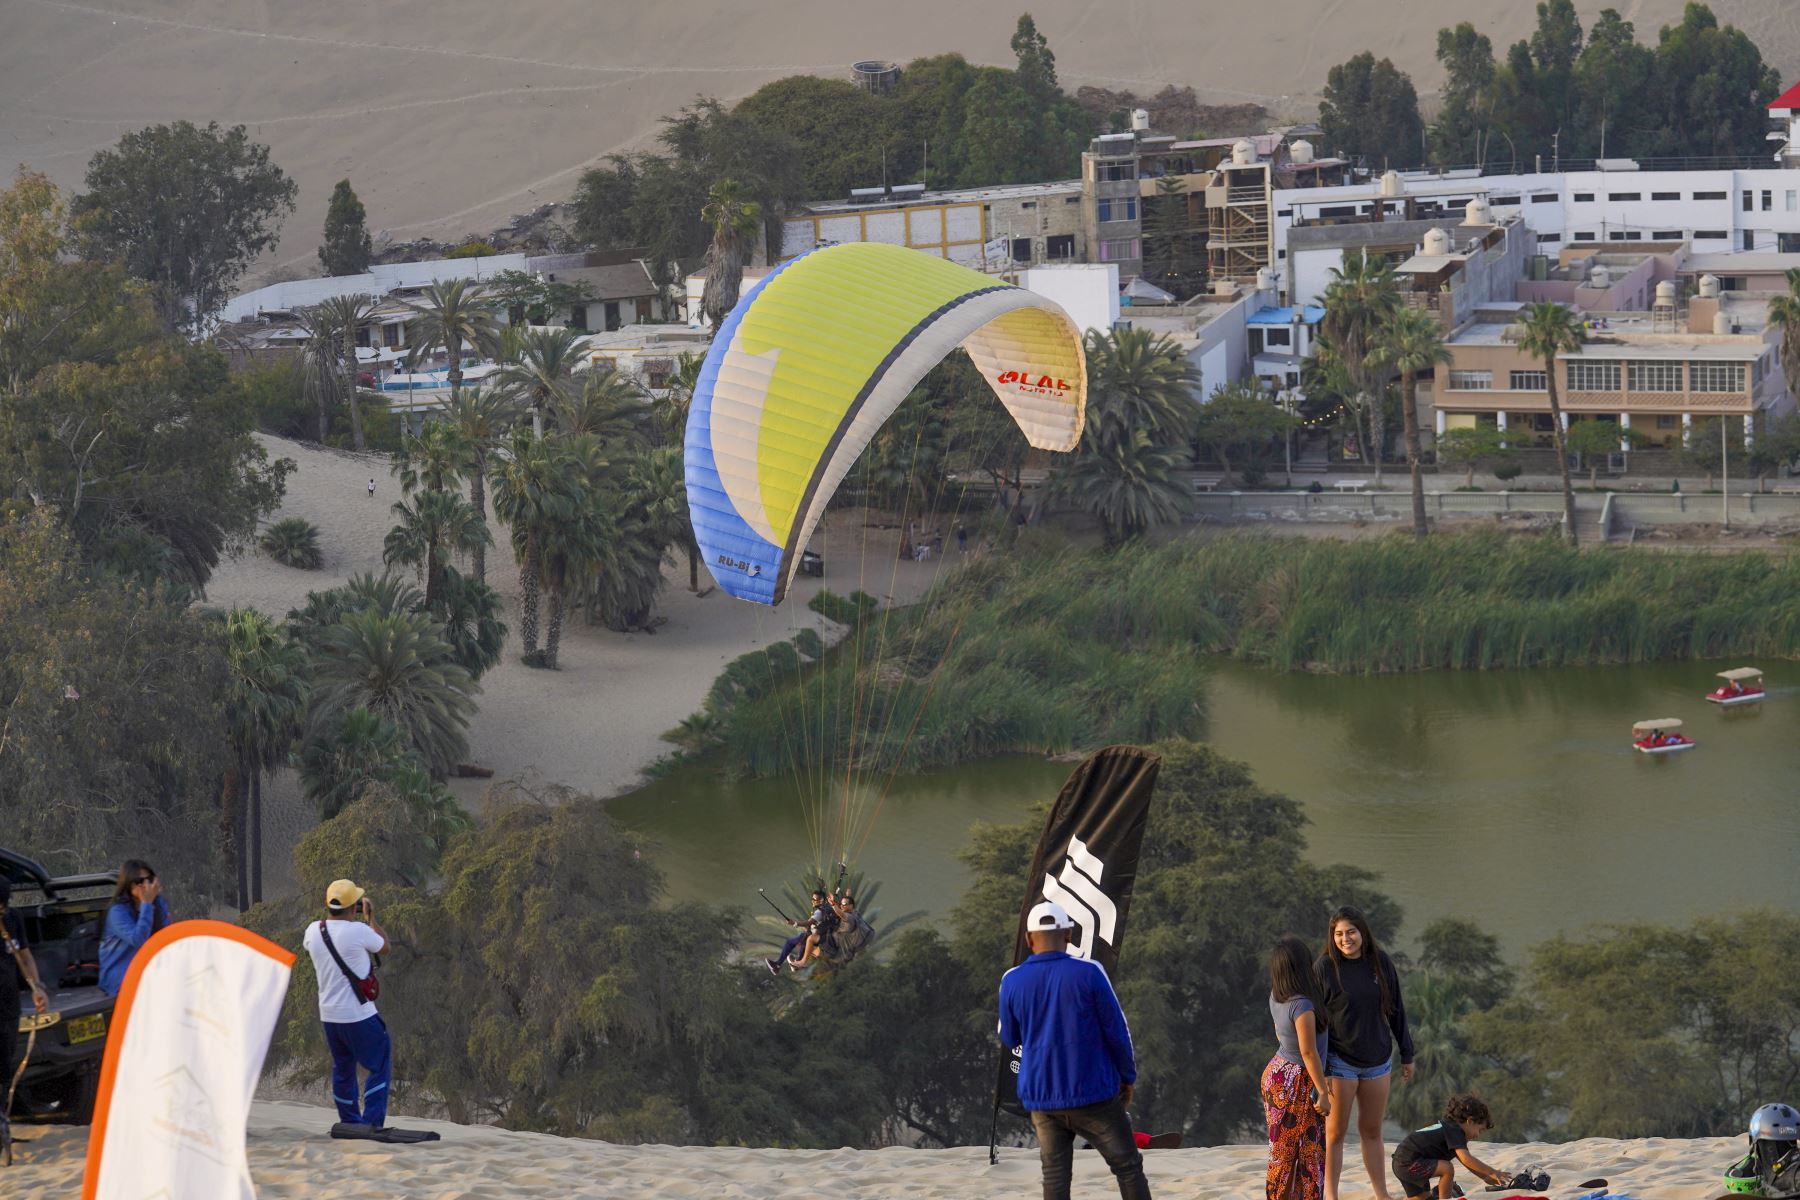 El oasis de Huacachina, ubicado en la provincia y región Ica, es un destino turístico popular, cuenta con extensas dunas que atraen a los turistas nacionales y extranjeros para la práctica de deportes de aventura como el sandboarding y el parapente. 

Foto:ANDINA/Genry Bautista